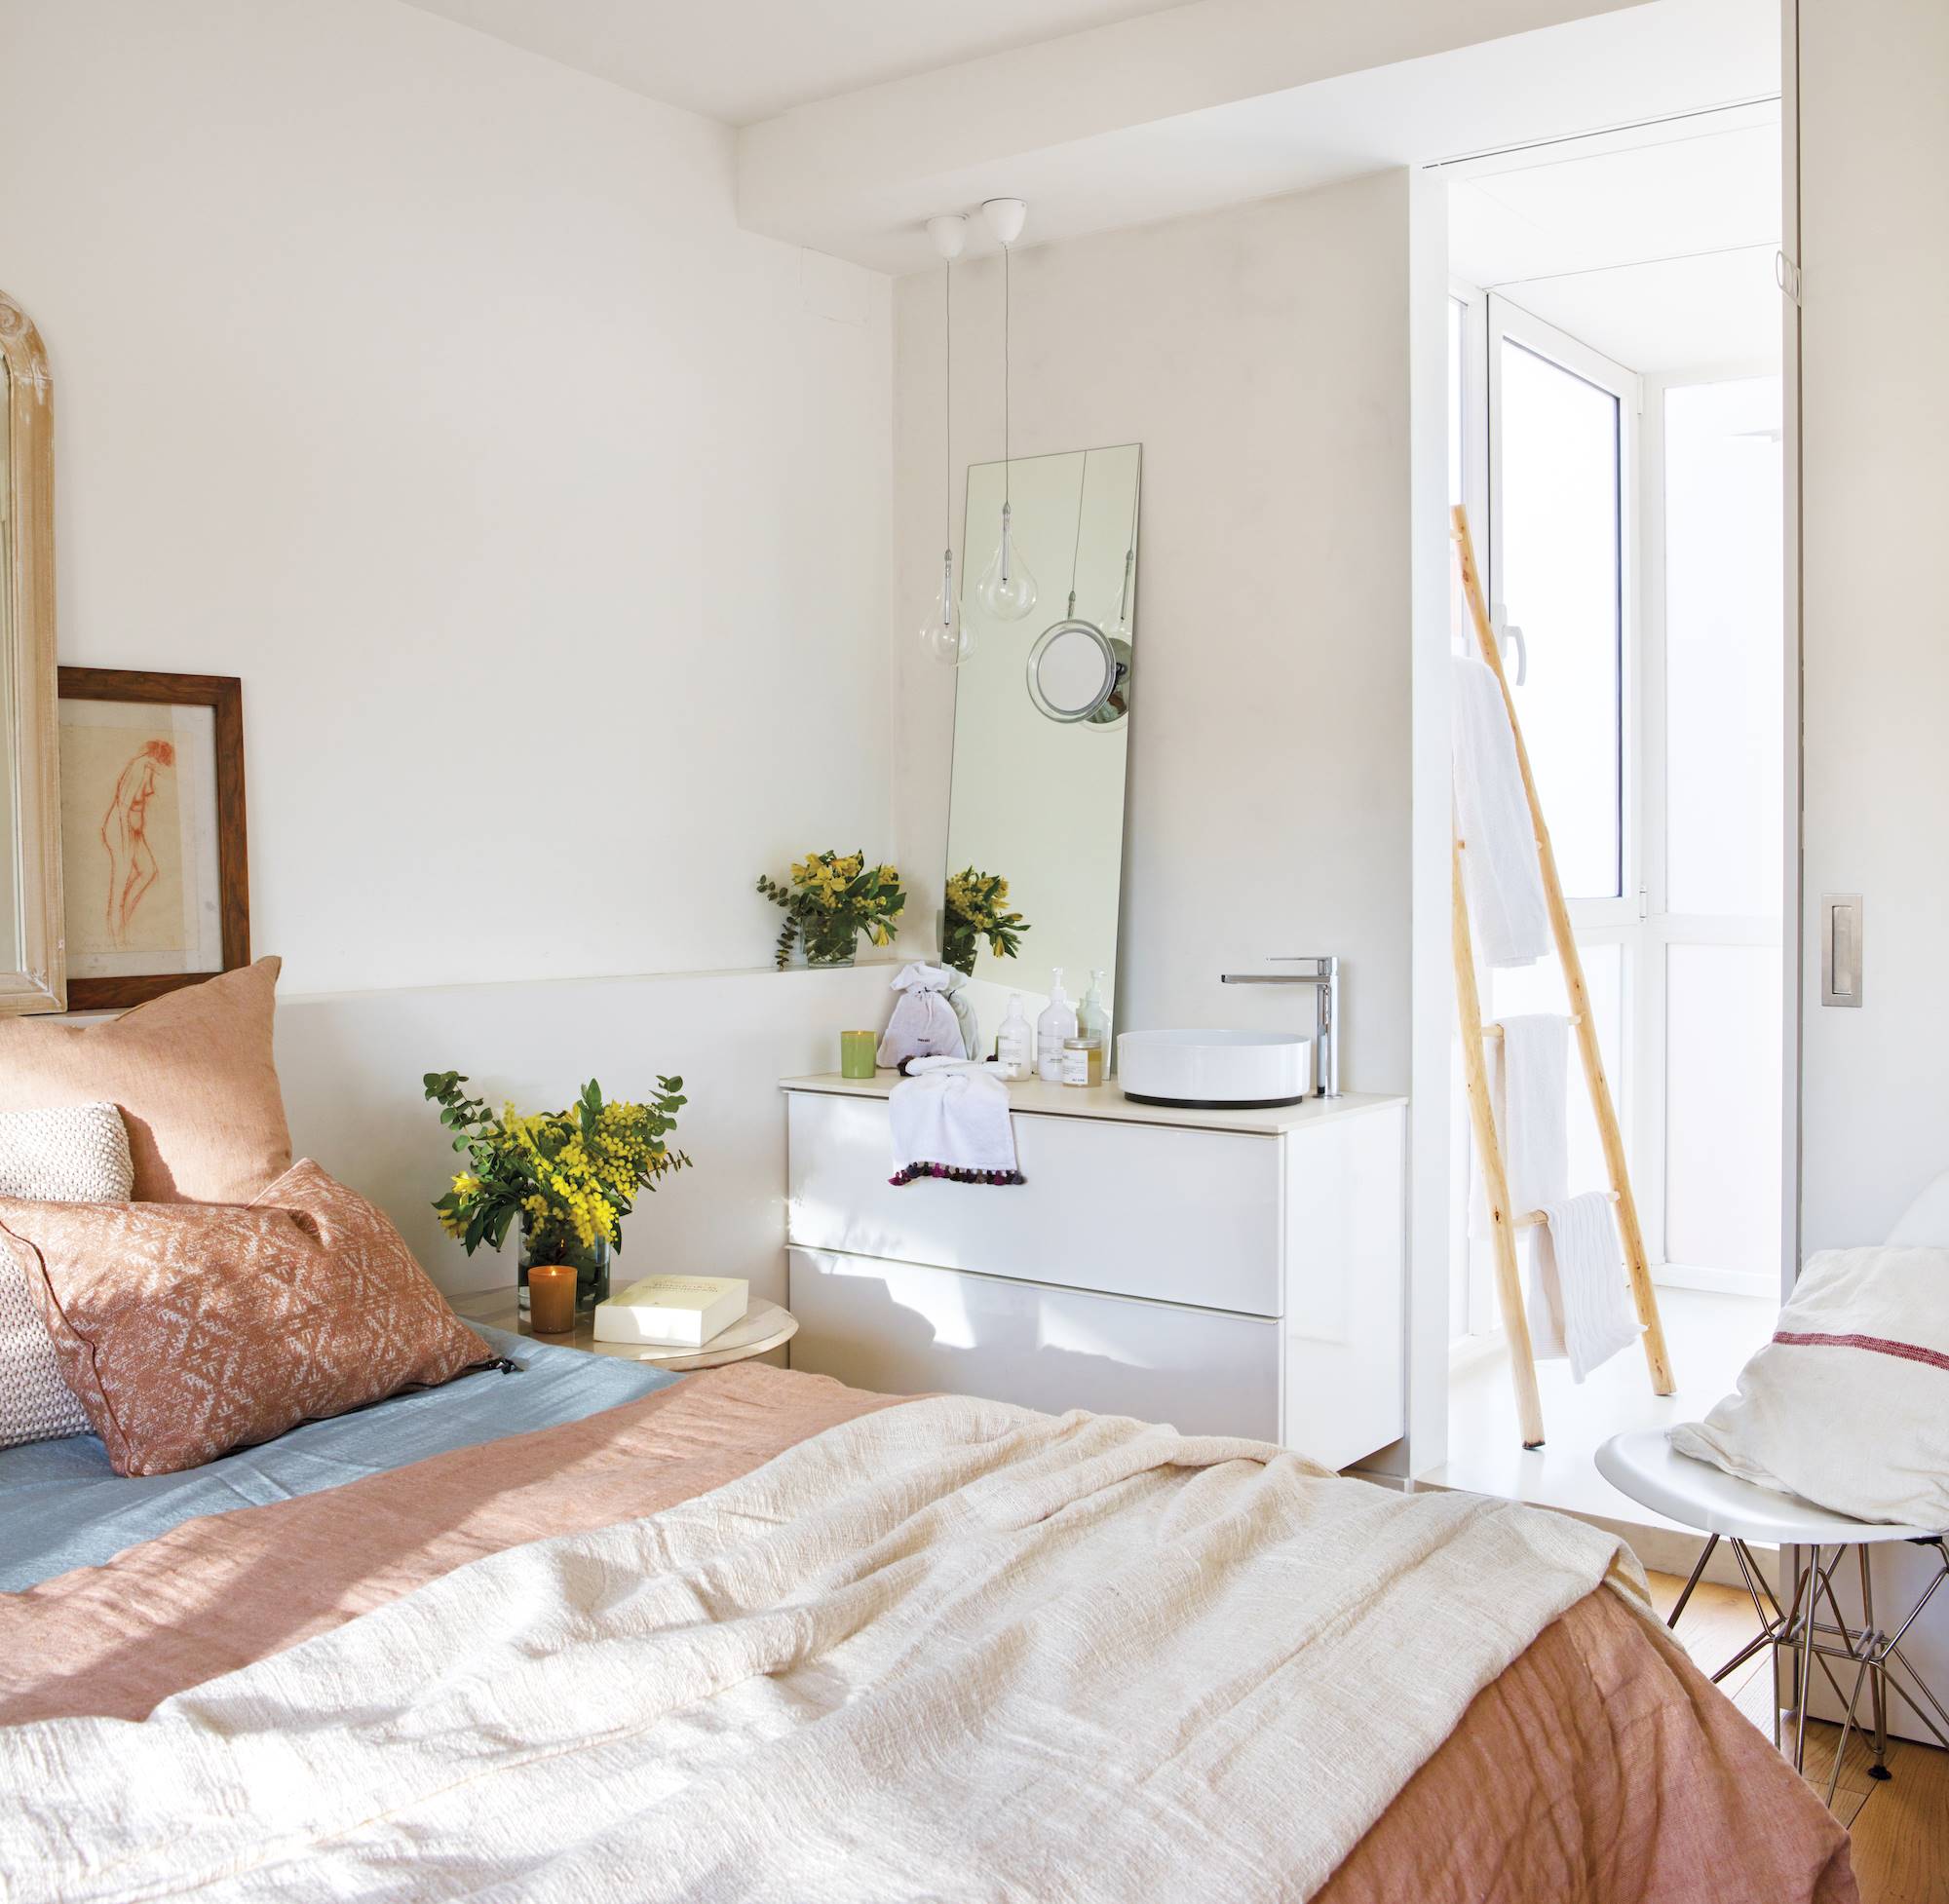 Dormitorio con zona lavamanos y ducha con puerta corredera_00480649